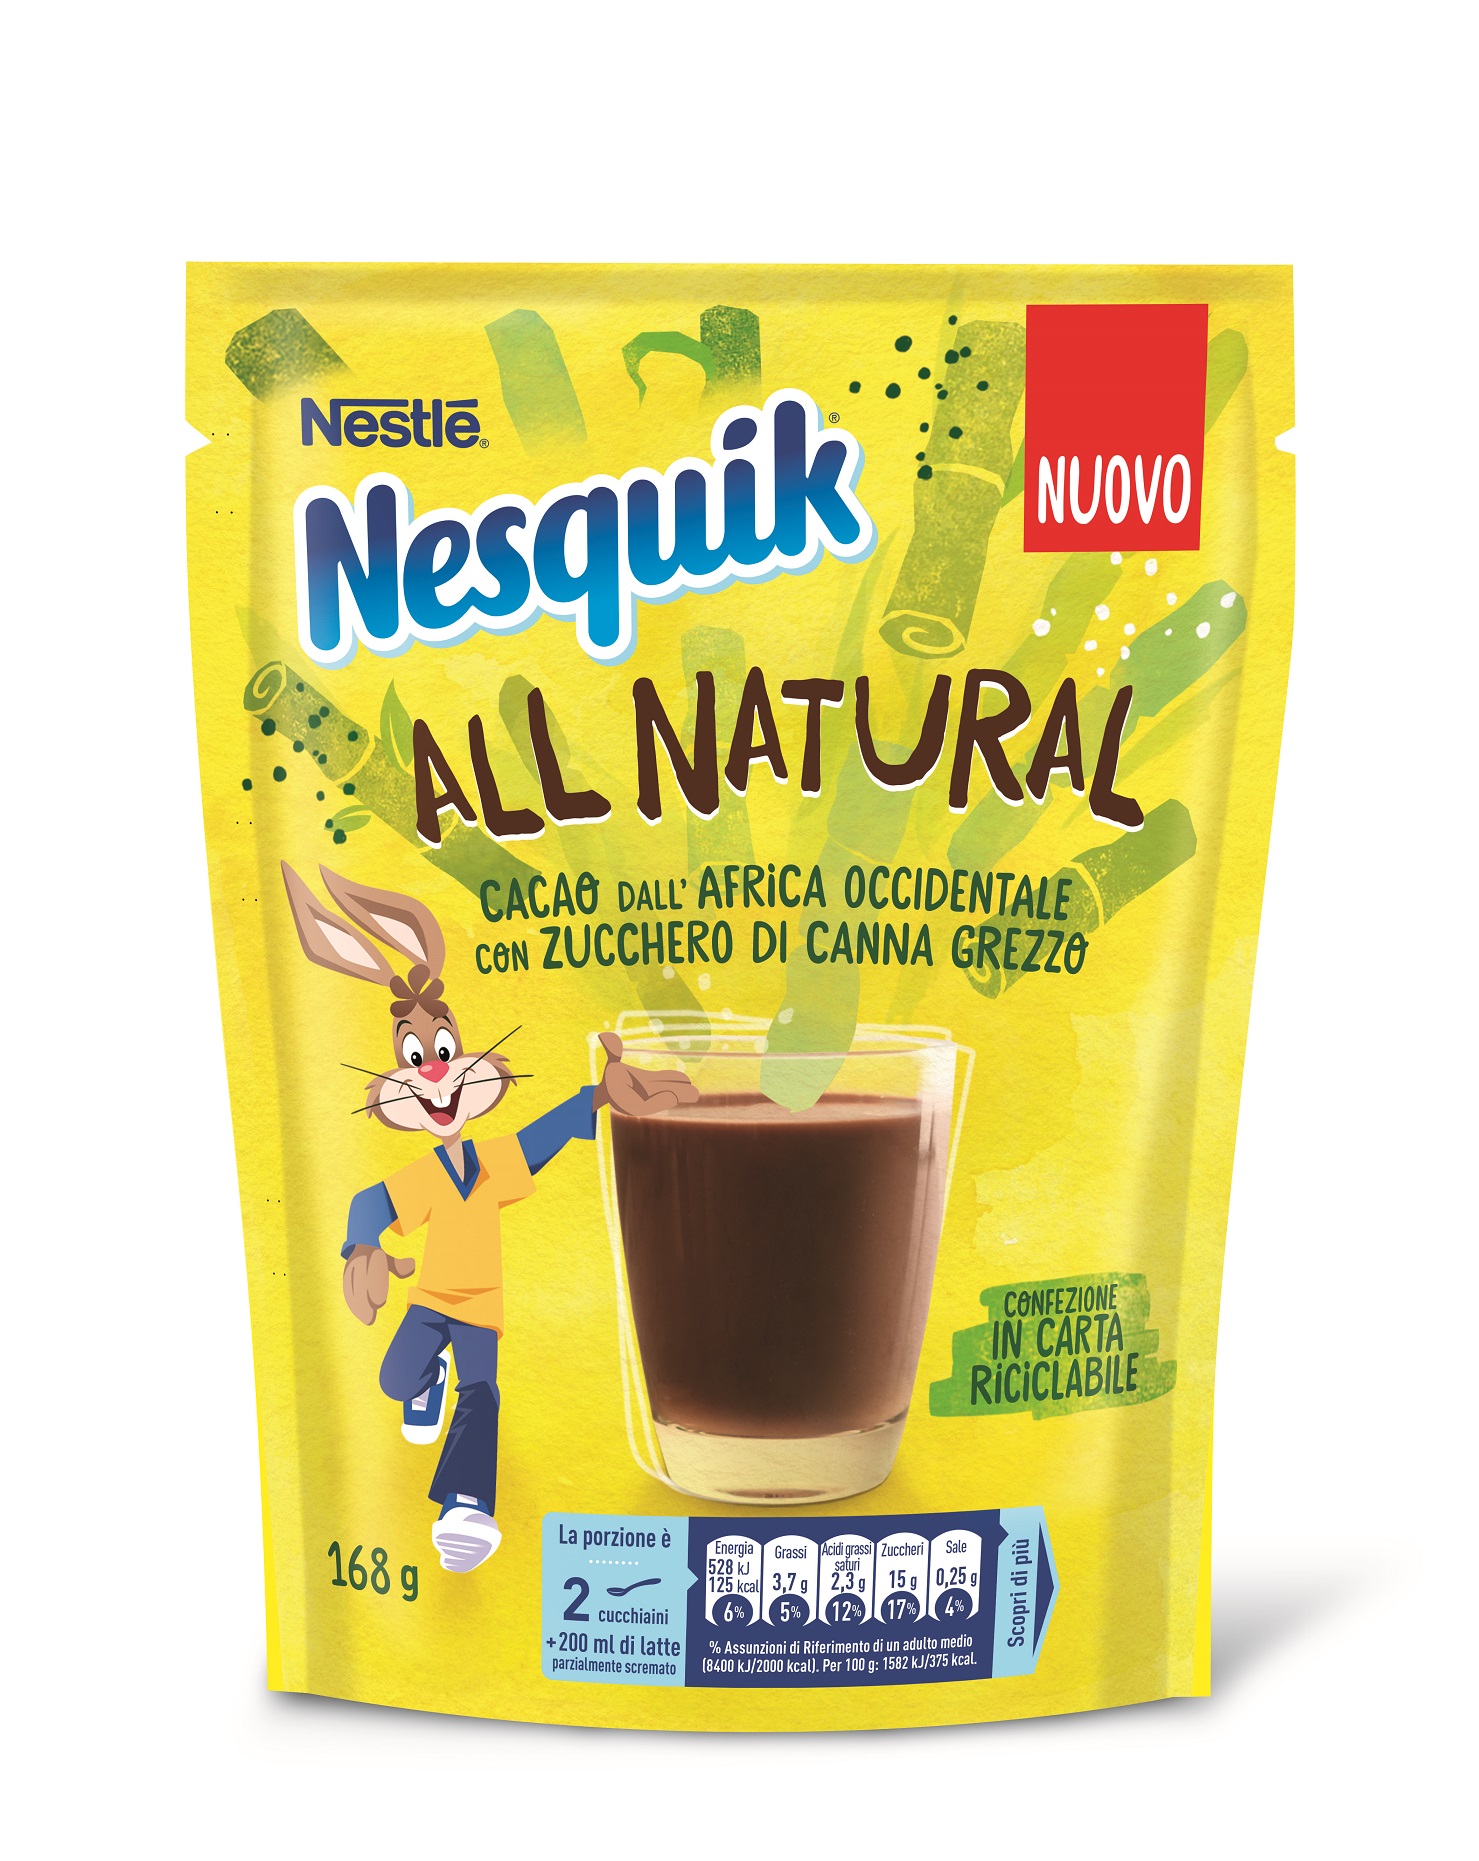 Nestlé lancia Nesquik All Natural, per una colazione sana e sostenibile - Sapori News 